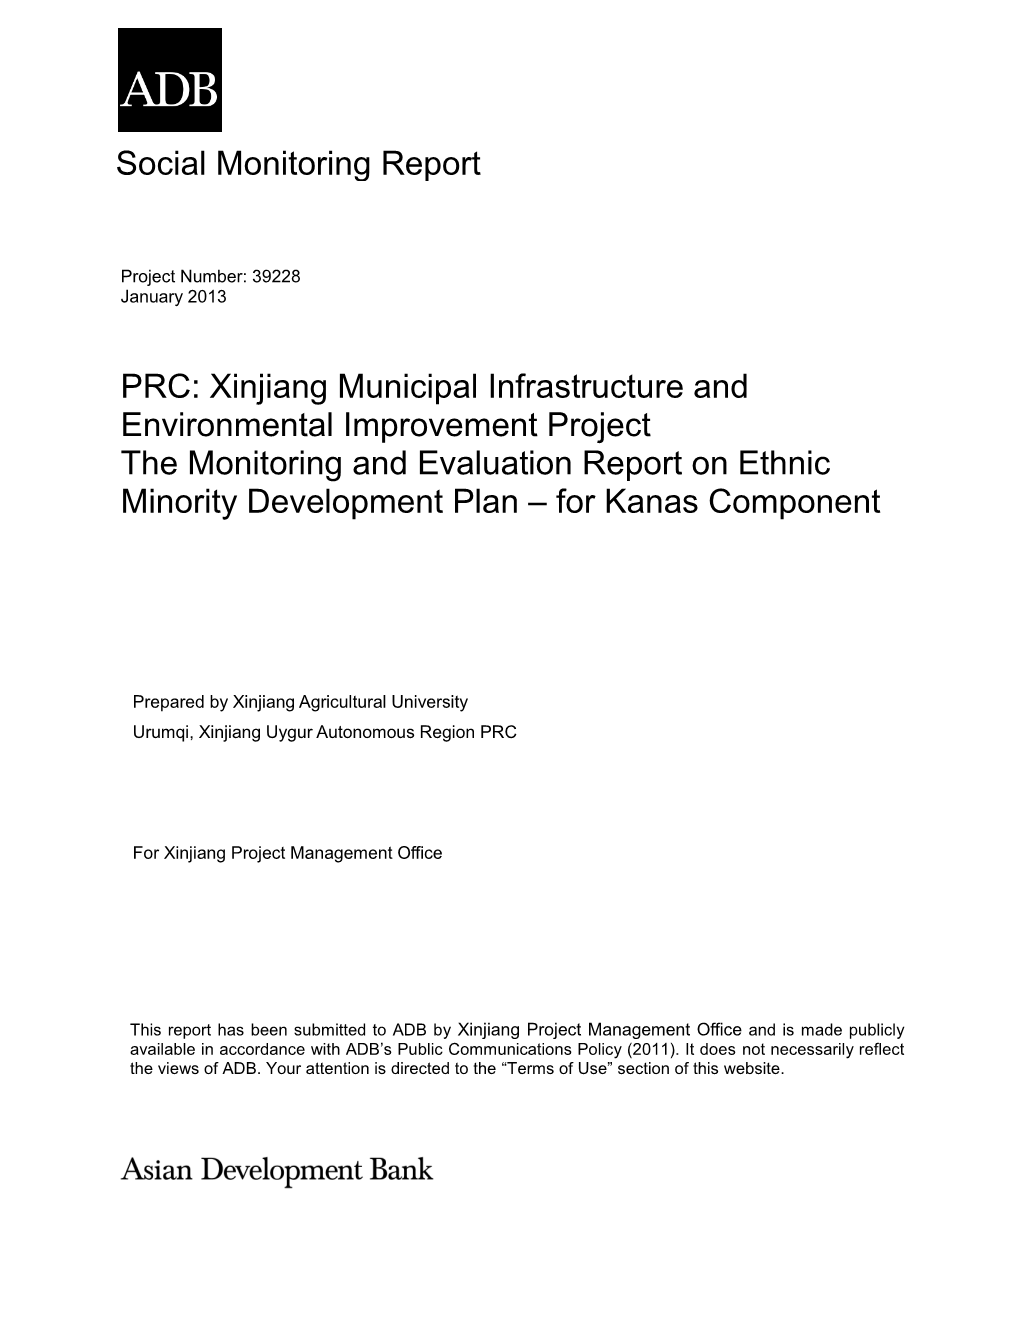 Social Monitoring Report PRC: Xinjiang Municipal Infrastructure